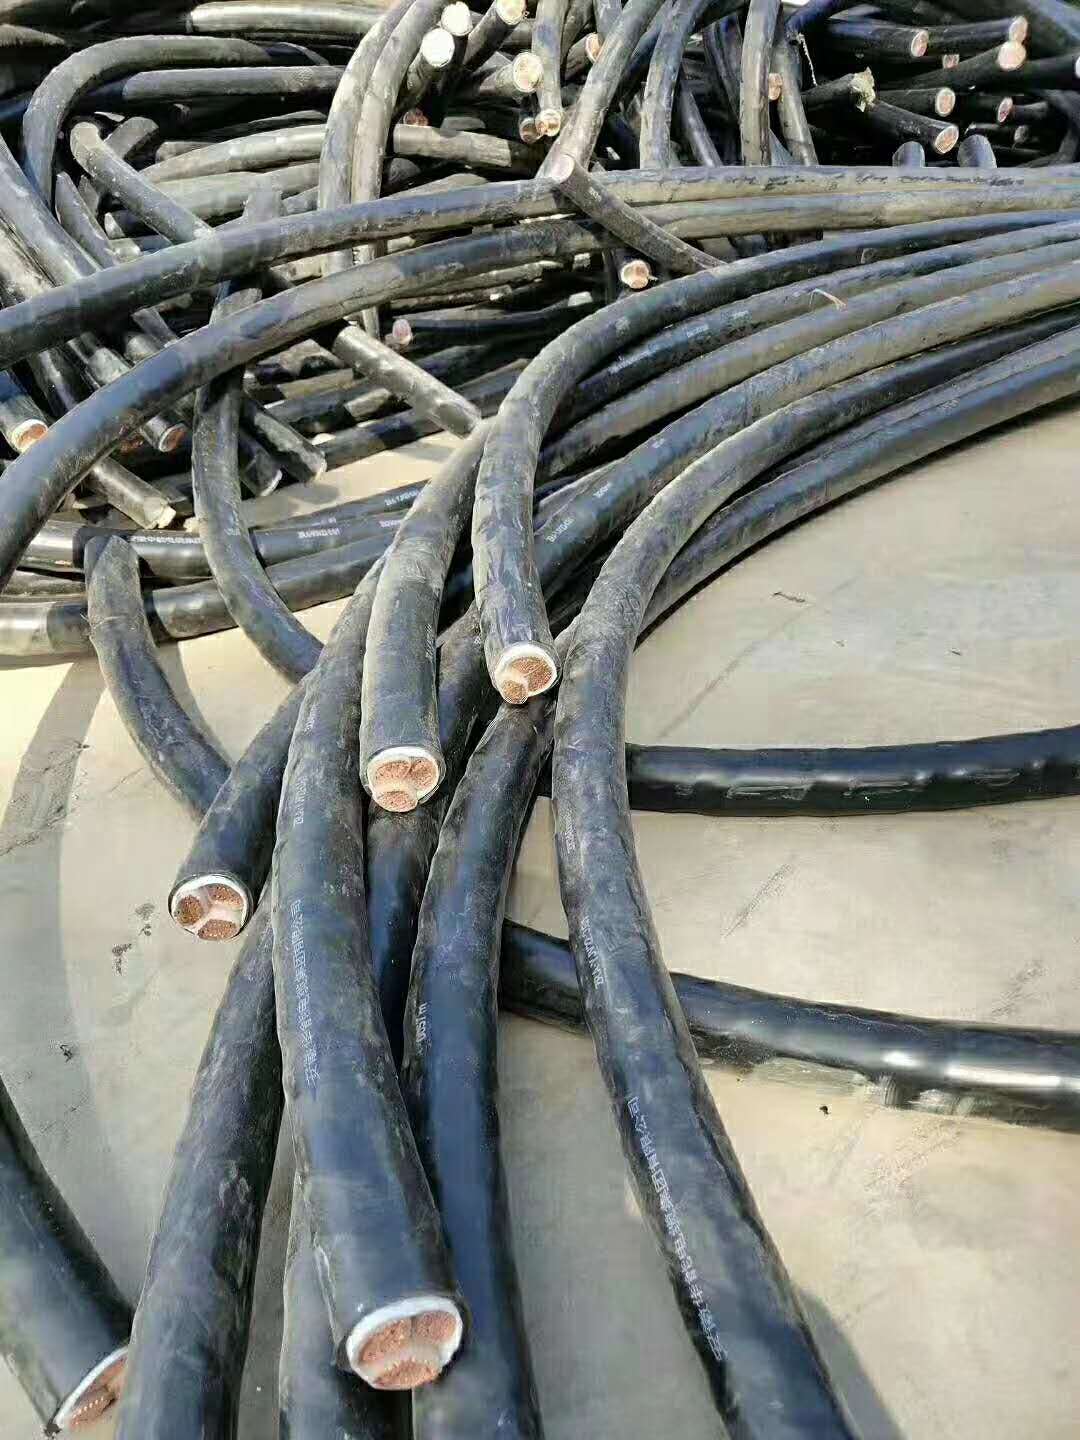 揭阳工厂电缆回收回收铠装电缆回收